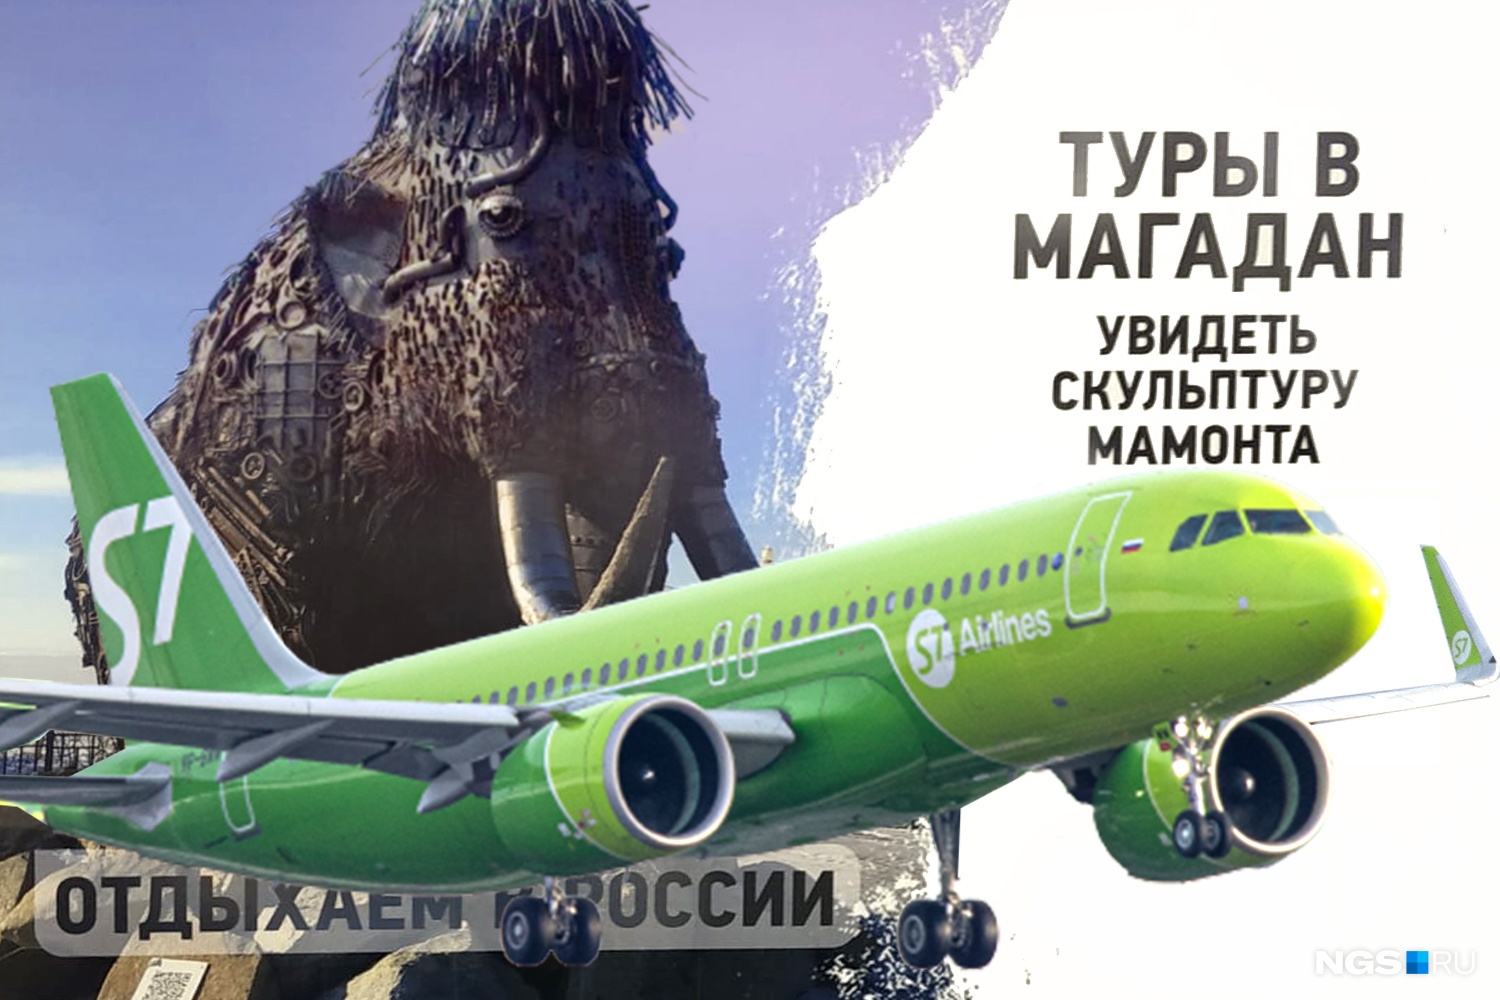 Альтернатива Европе: новосибирское агентство организовало туры в Магадан, чтобы показать 6-тонного мамонта